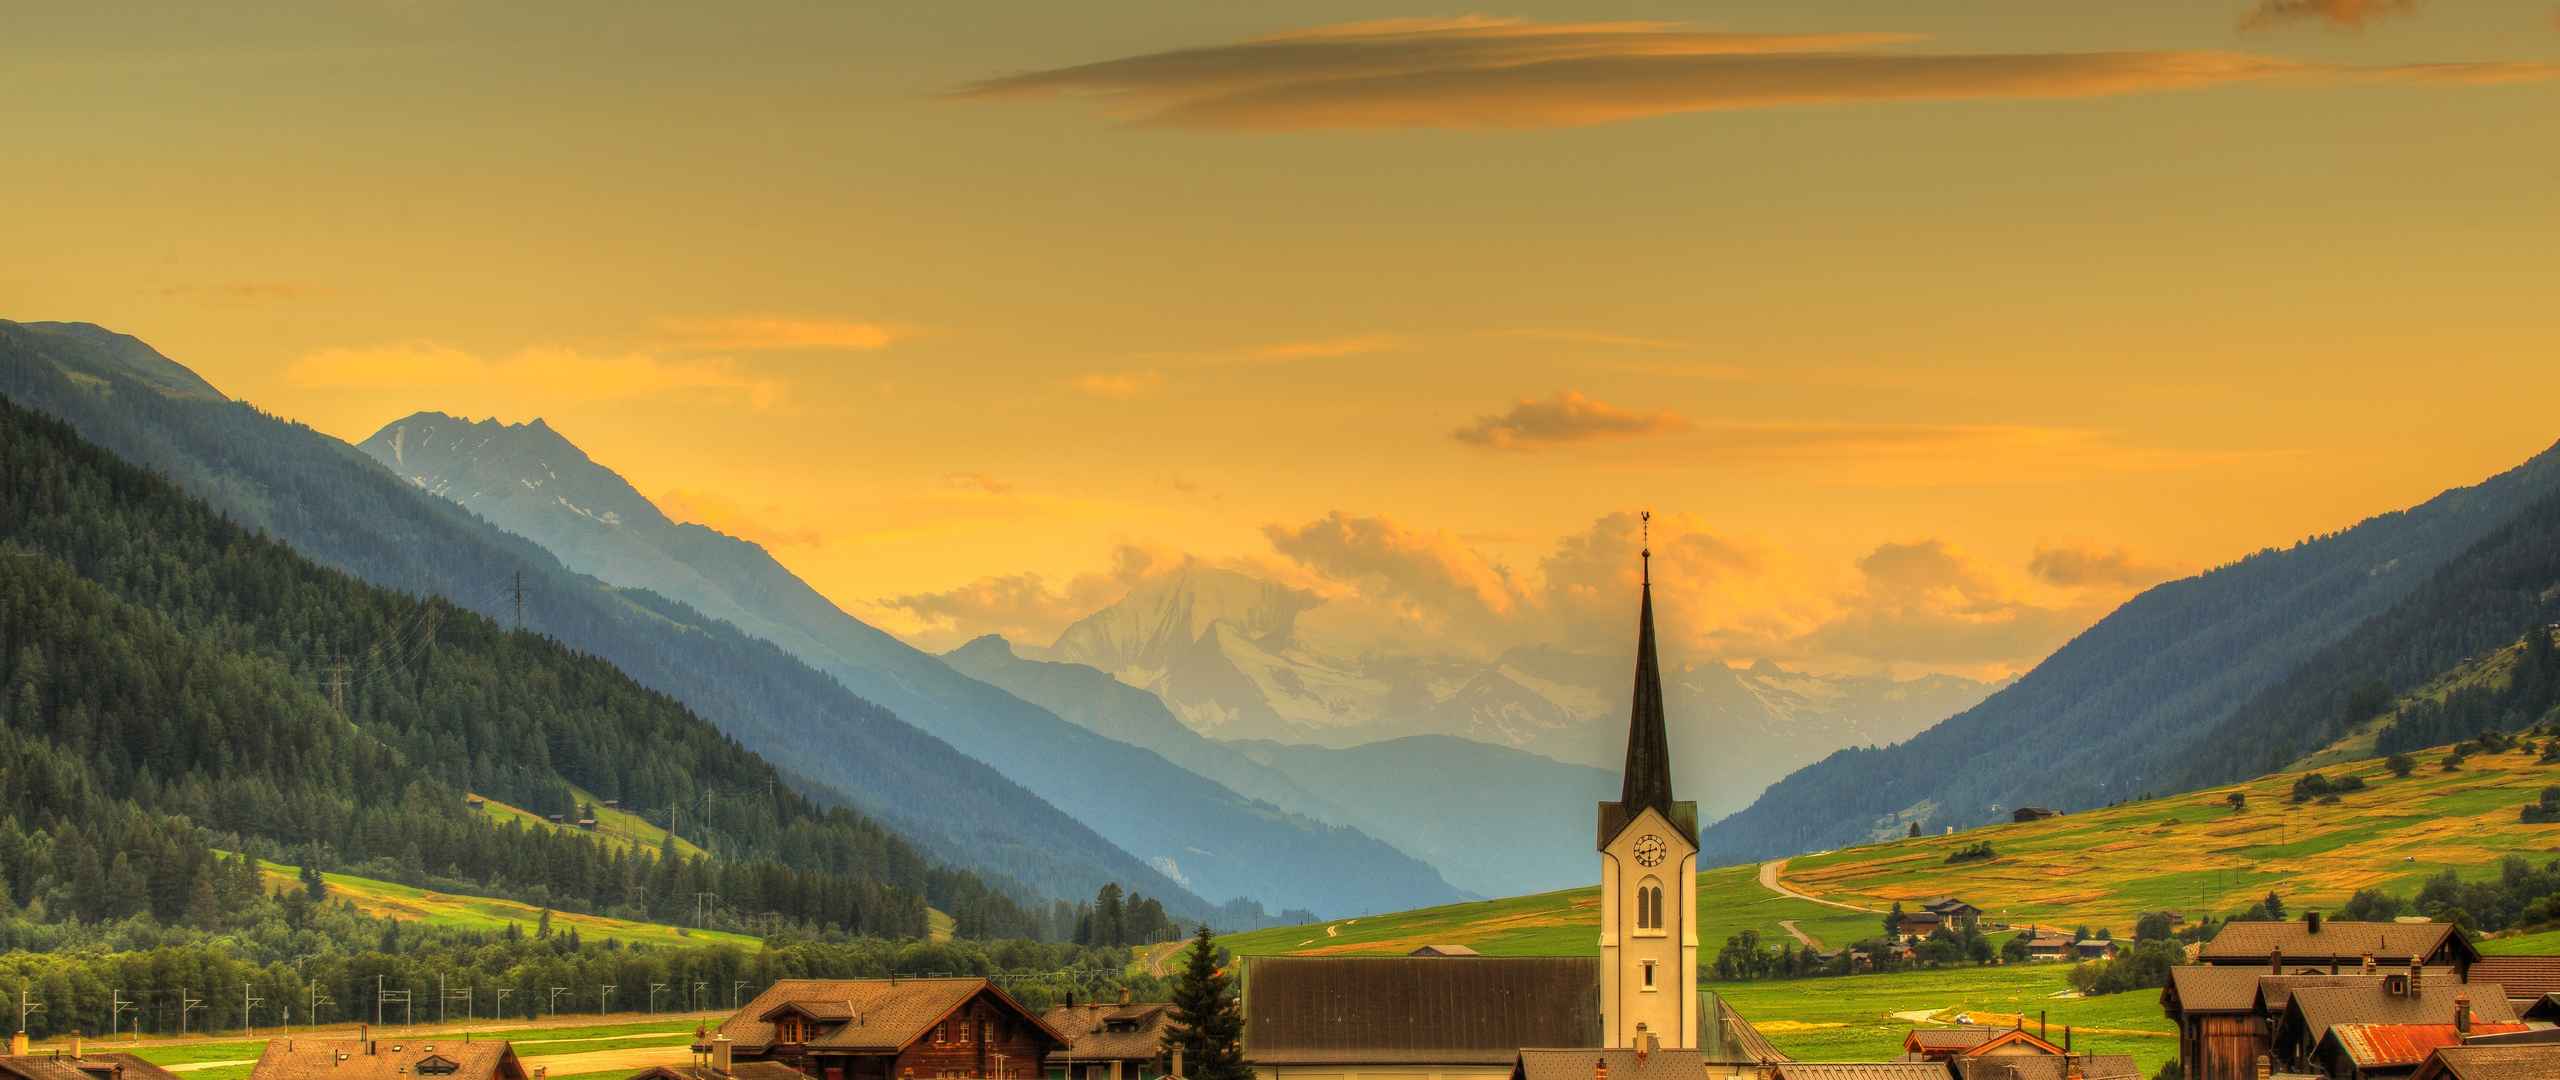 瑞士小镇风景5120x2160